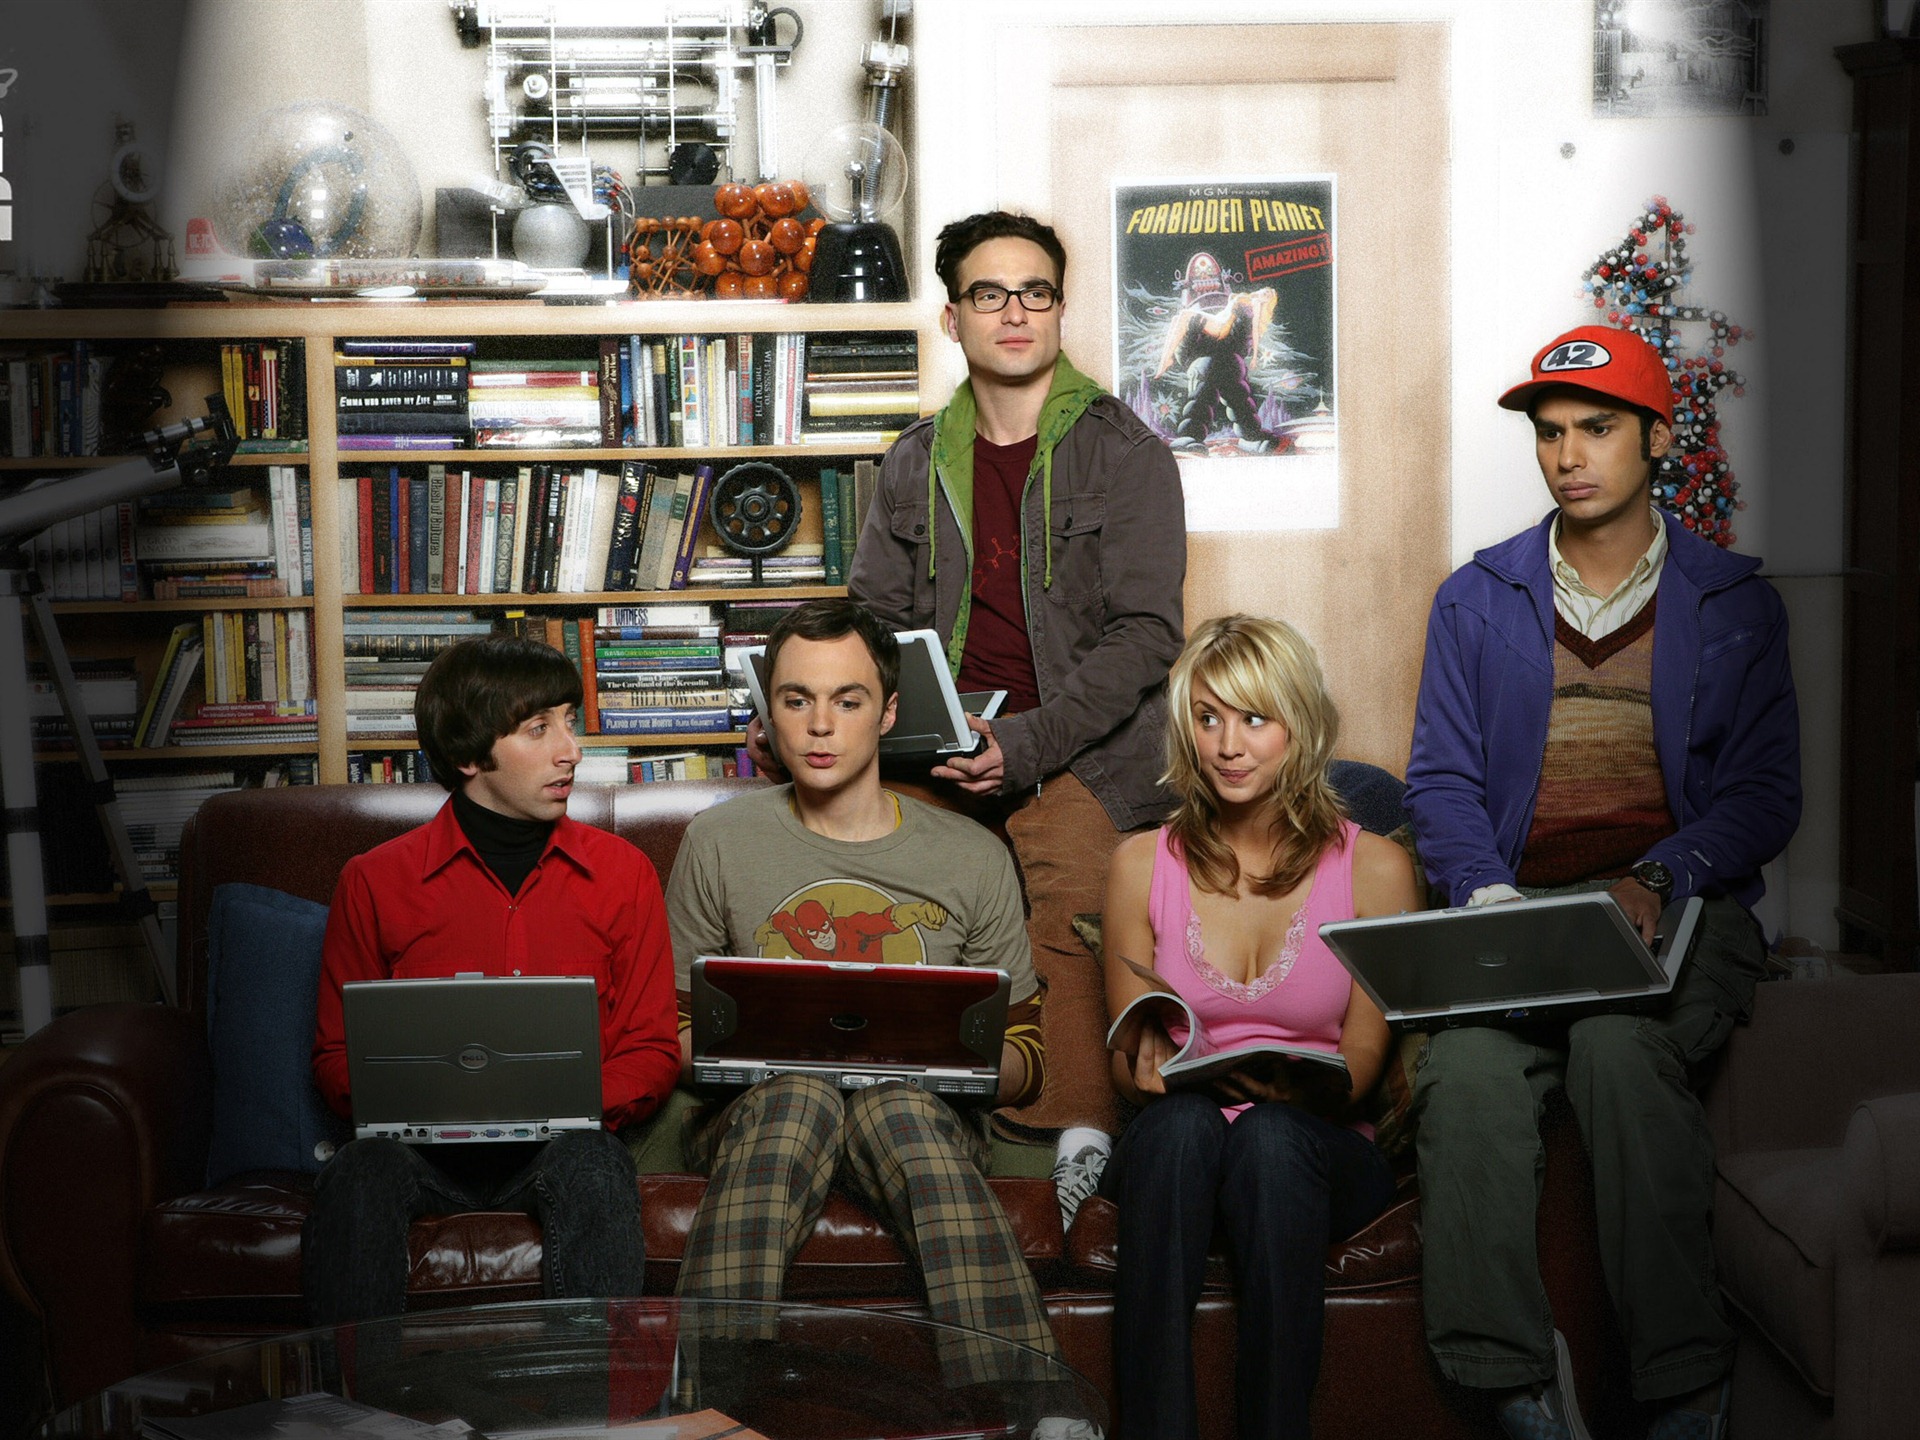 The Big Bang Theory 生活大爆炸 电视剧高清壁纸19 - 1920x1440